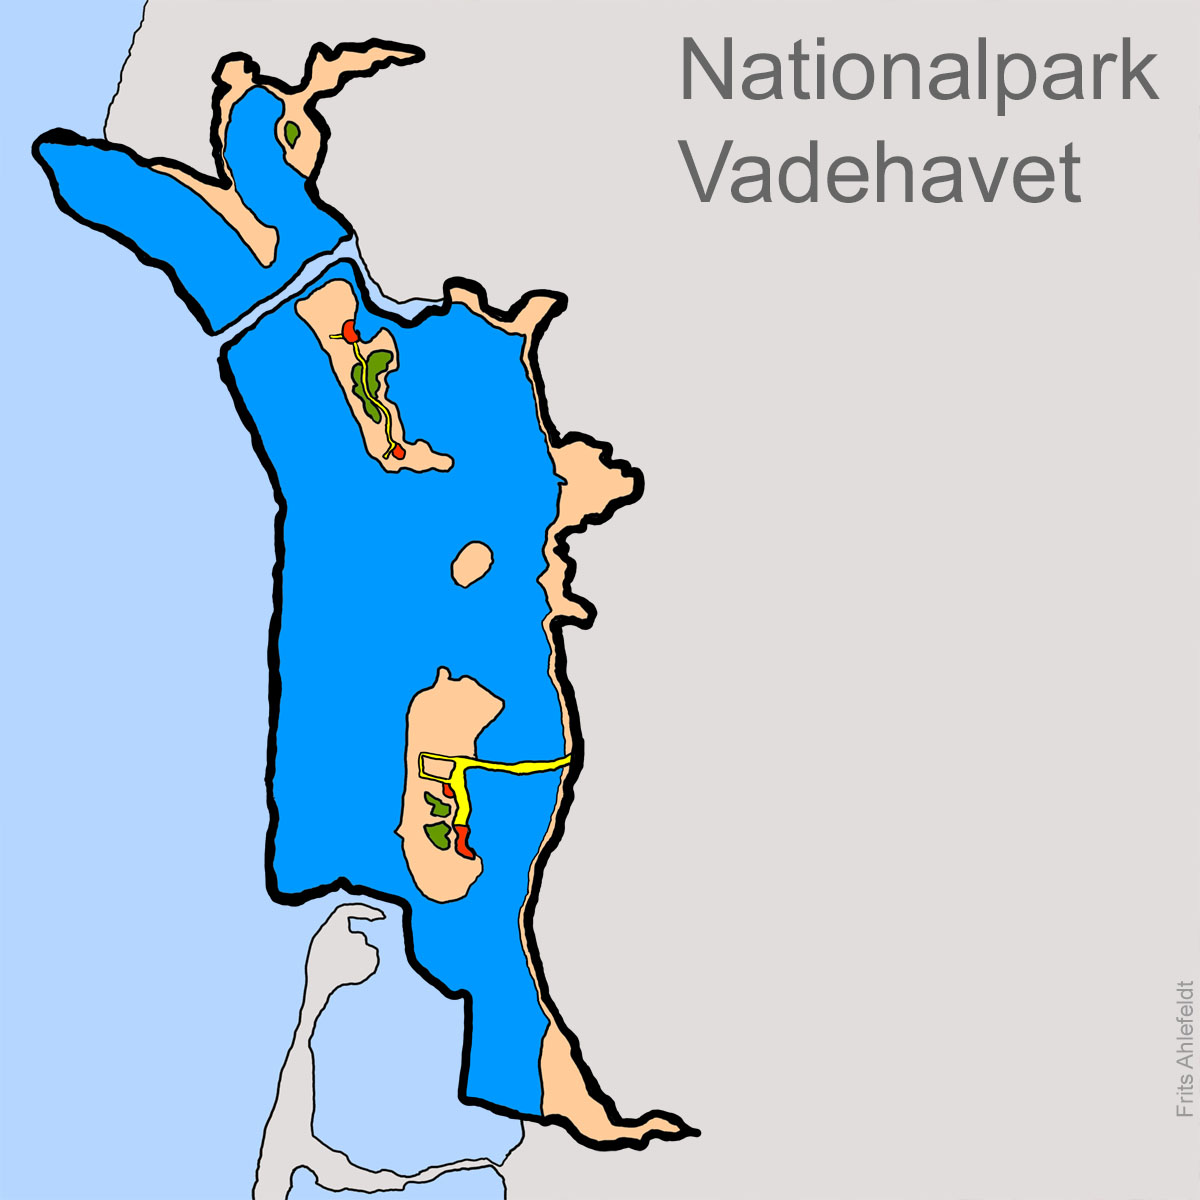 Grafisk landkort over Nationalpark Vadehavet, Danmark. illustration af Frits Ahlefeldt